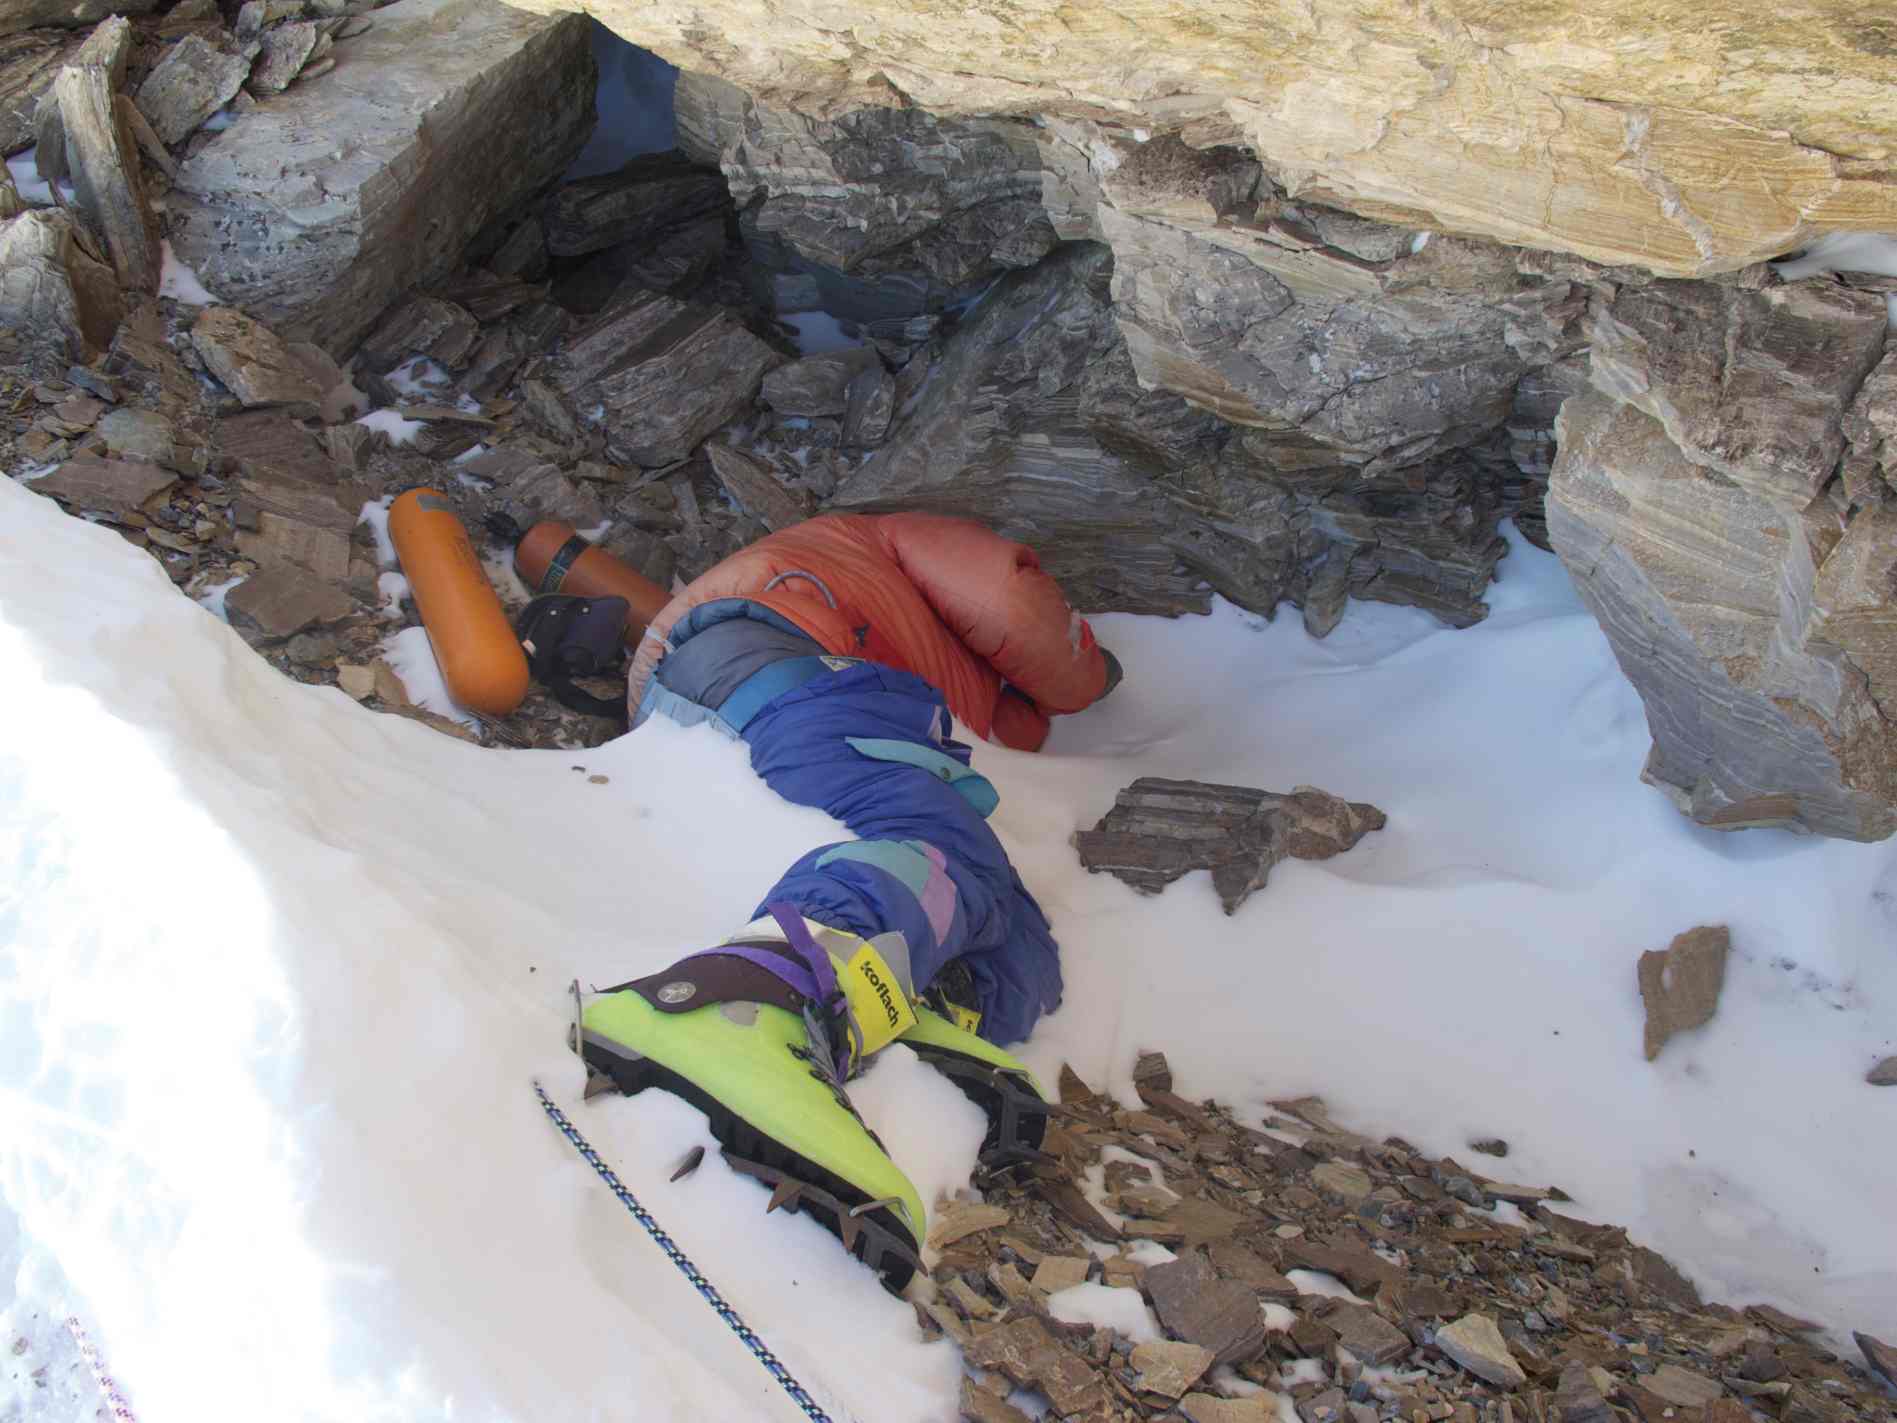 Foto van "Green Boots", Indiase klimmer die stierf op de Northeast Ridge van Mt. Everest in 1996